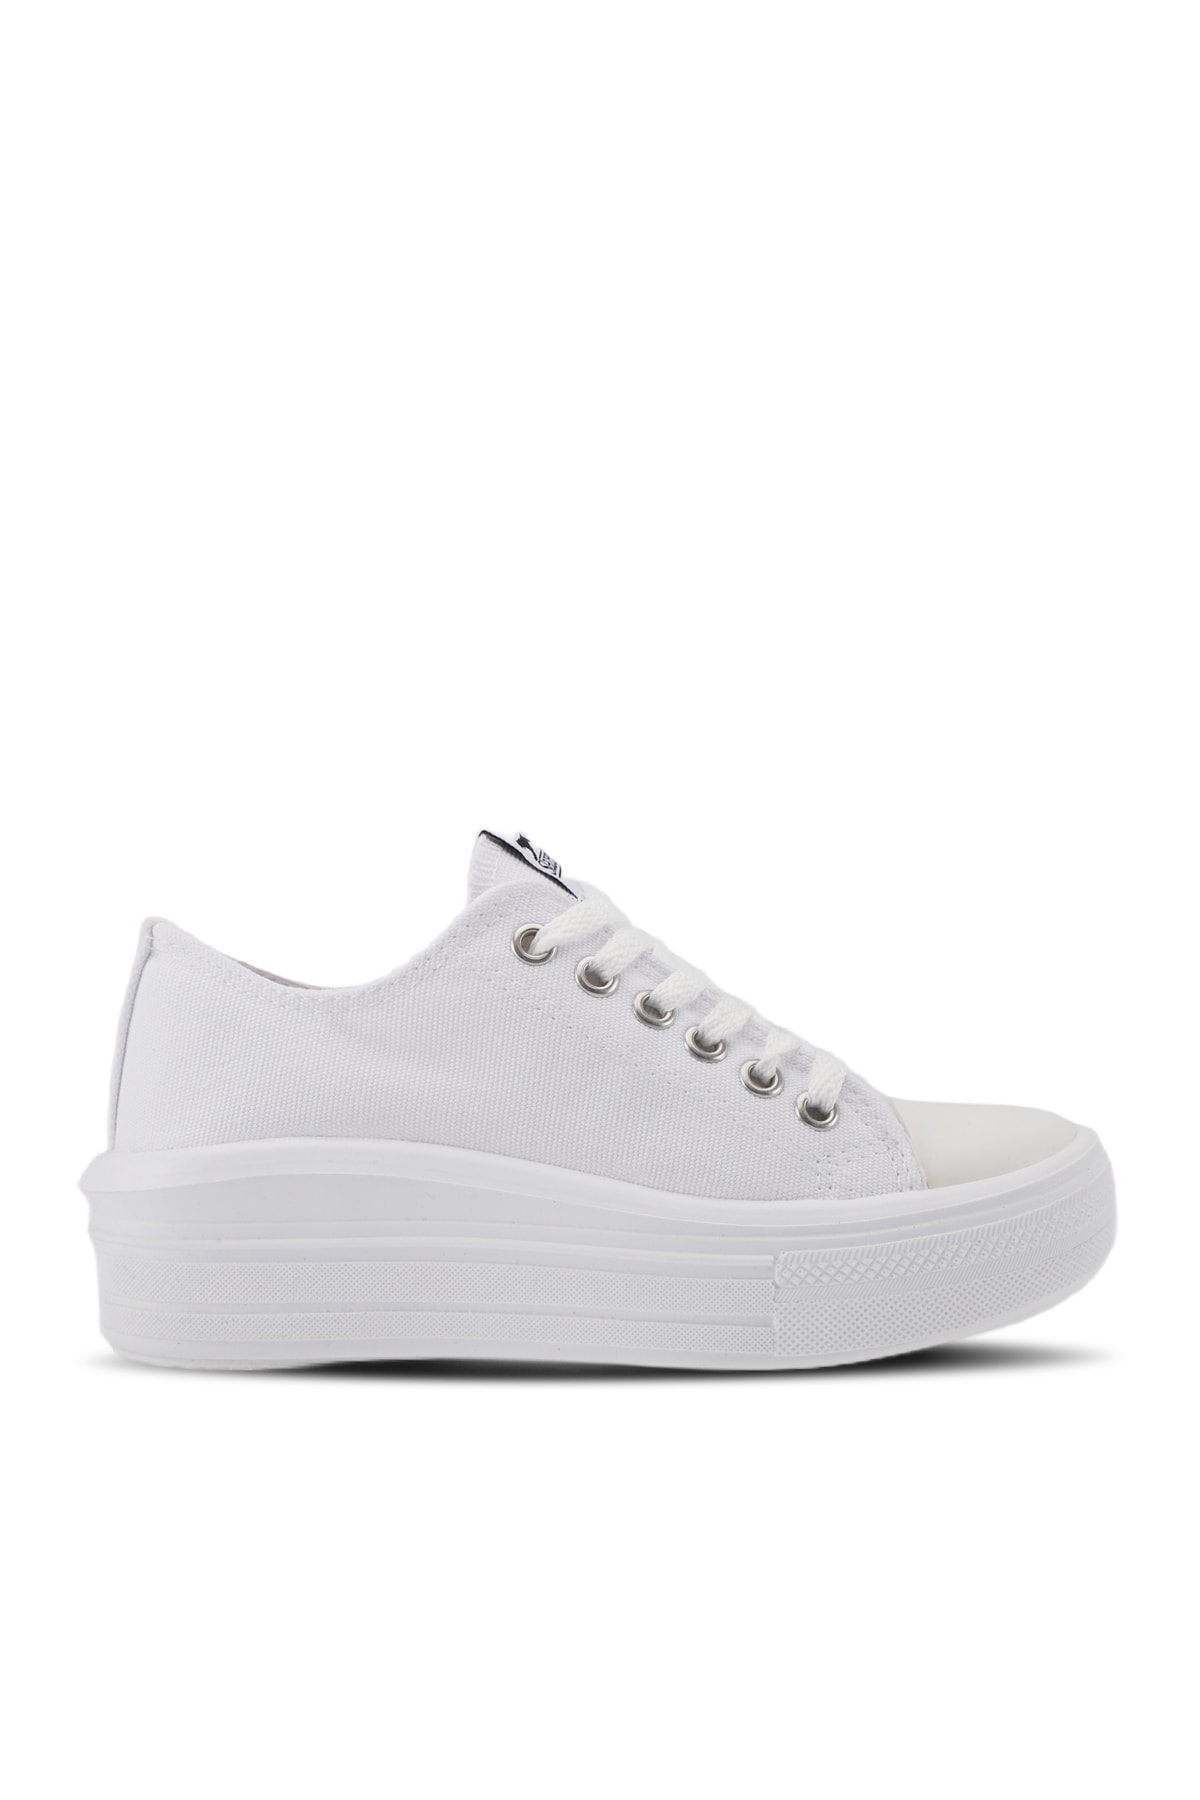 Levně Slazenger Sun Sneaker Dámské boty bílé